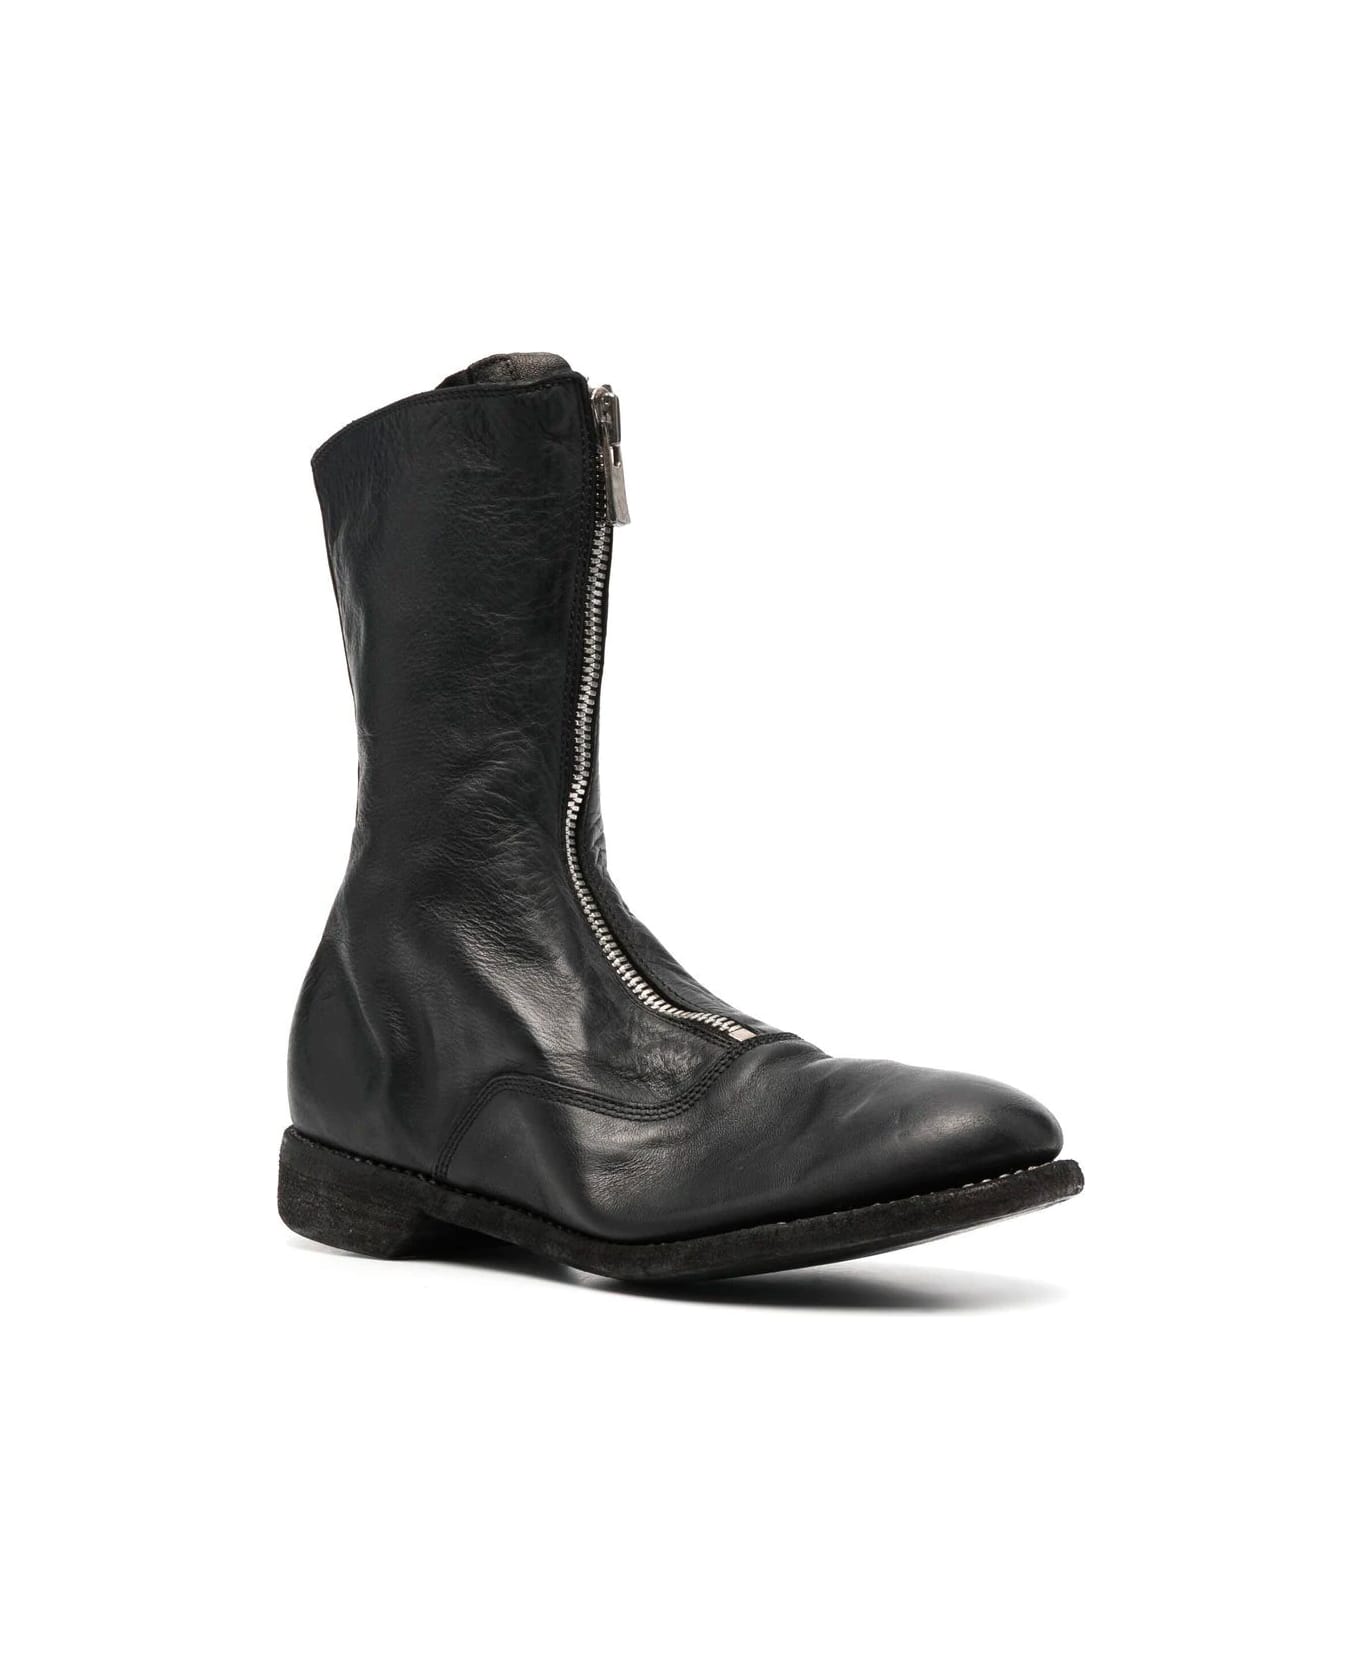 Guidi Front Zip Boot - Blkt Black ブーツ